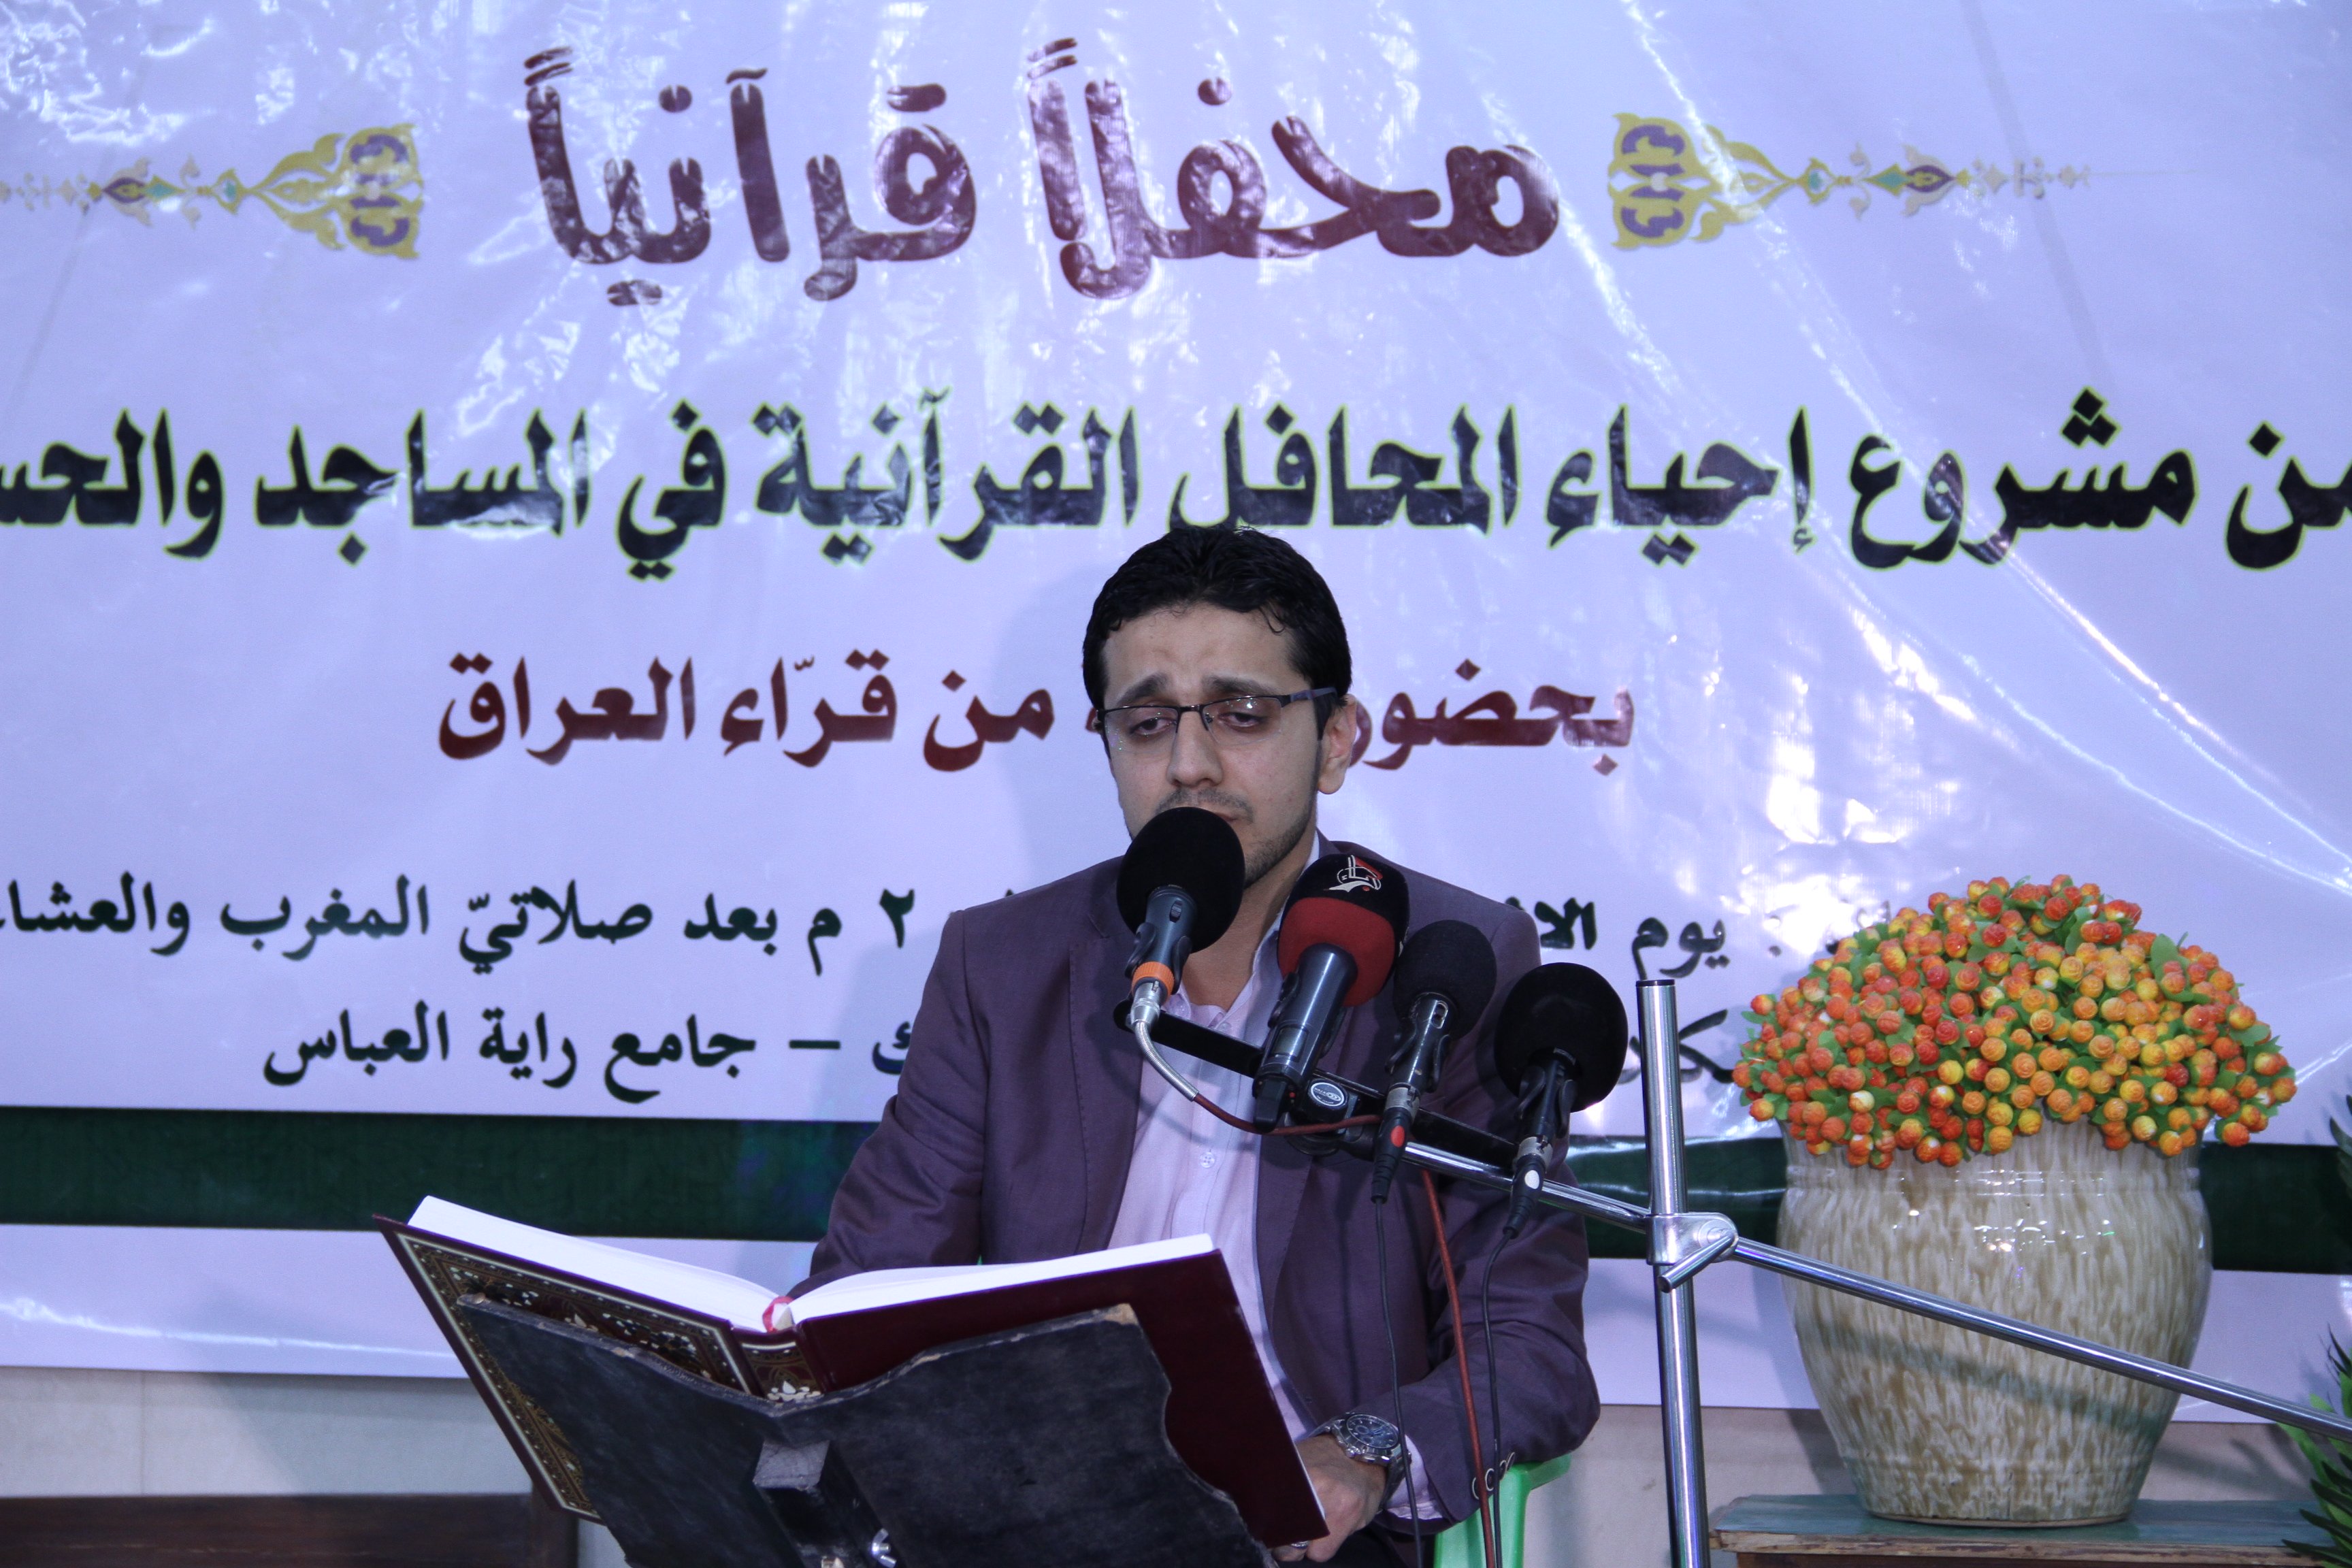 أقام معهد القرآن الكريم محفلًا قرآنياً مميزاً في قضاء عفك بمحافظة الديوانية.